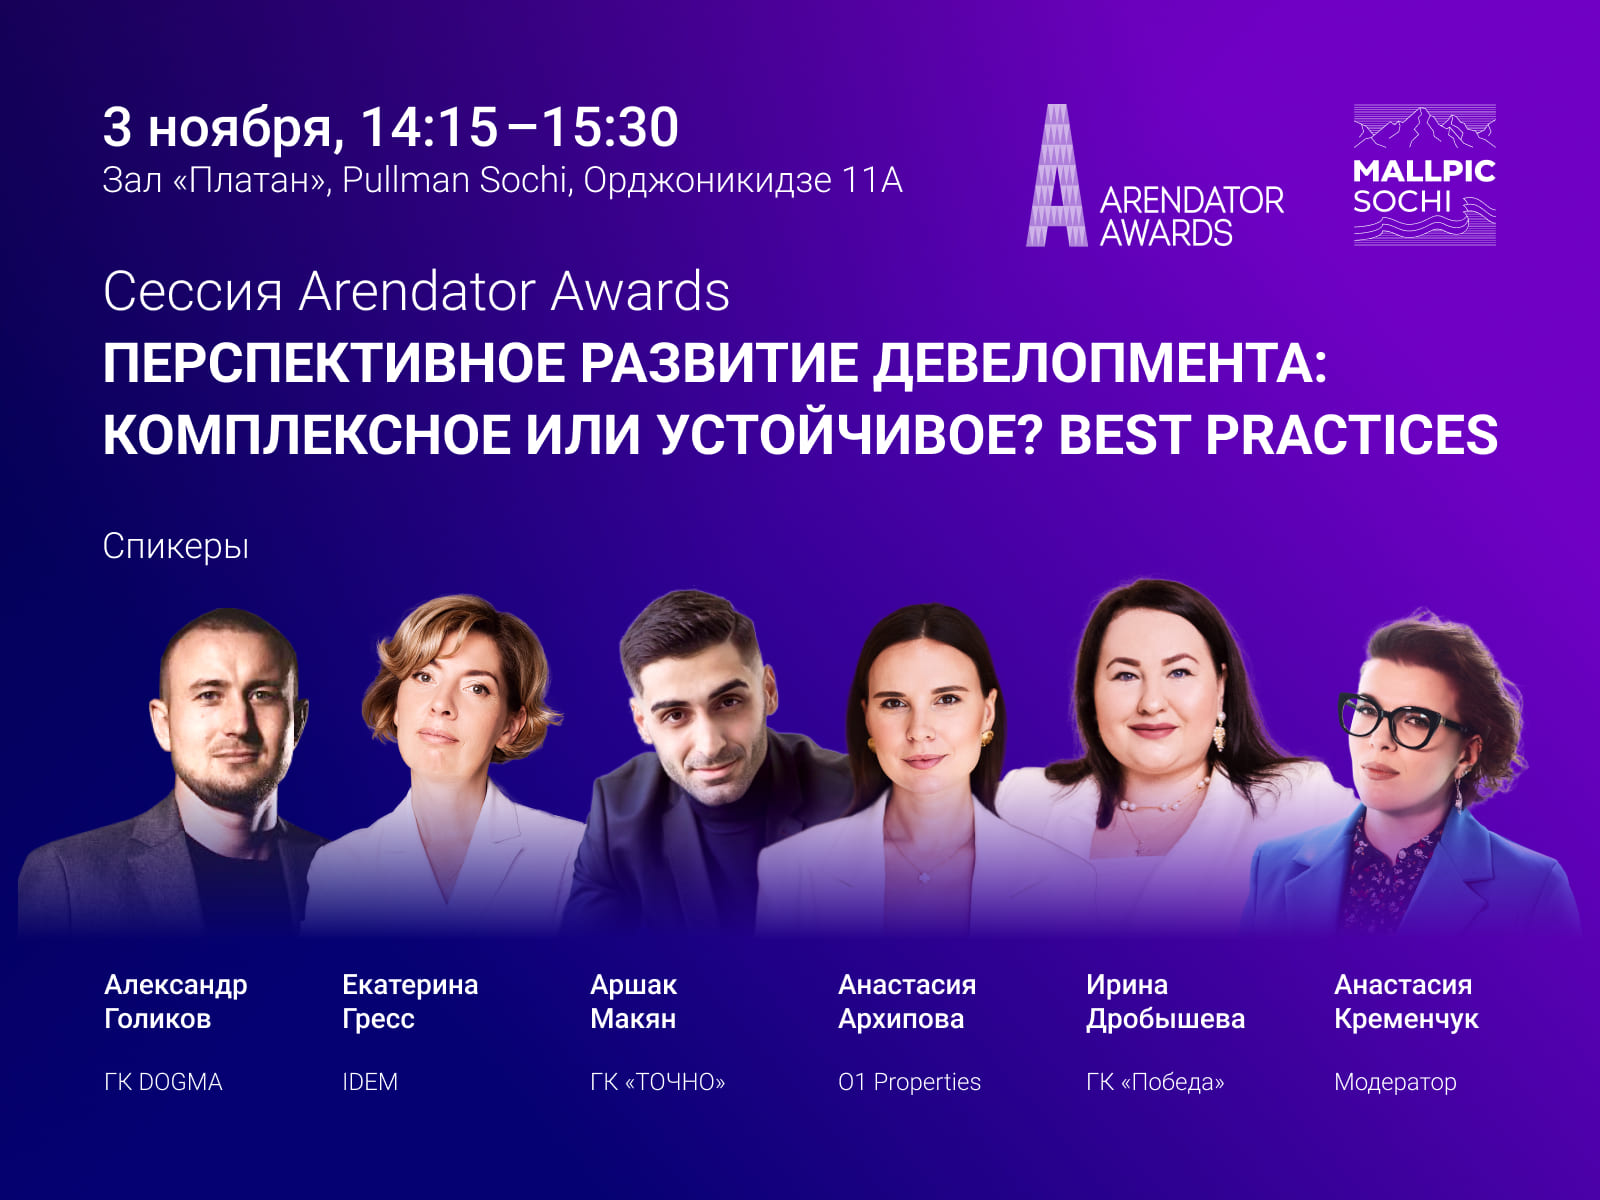 Сессия Arendator Awards: «Перспективное развитие девелопмента: комплексное или устойчивое? Best practices»